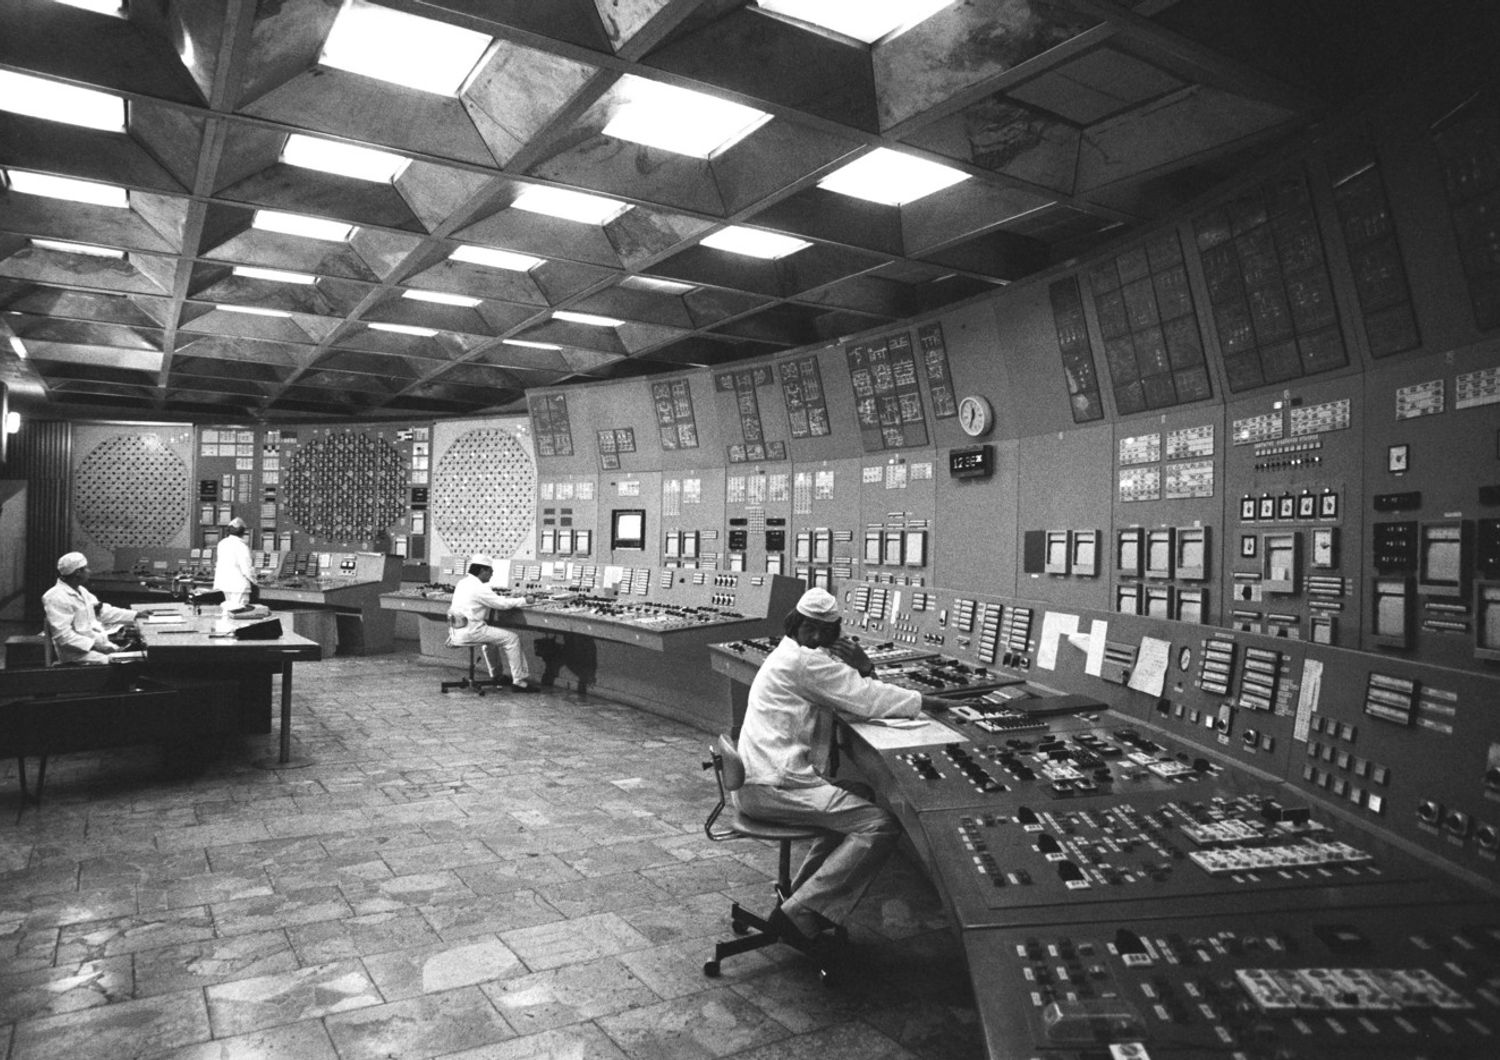 La sala di controllo della centrale nucleare di Chernobyl